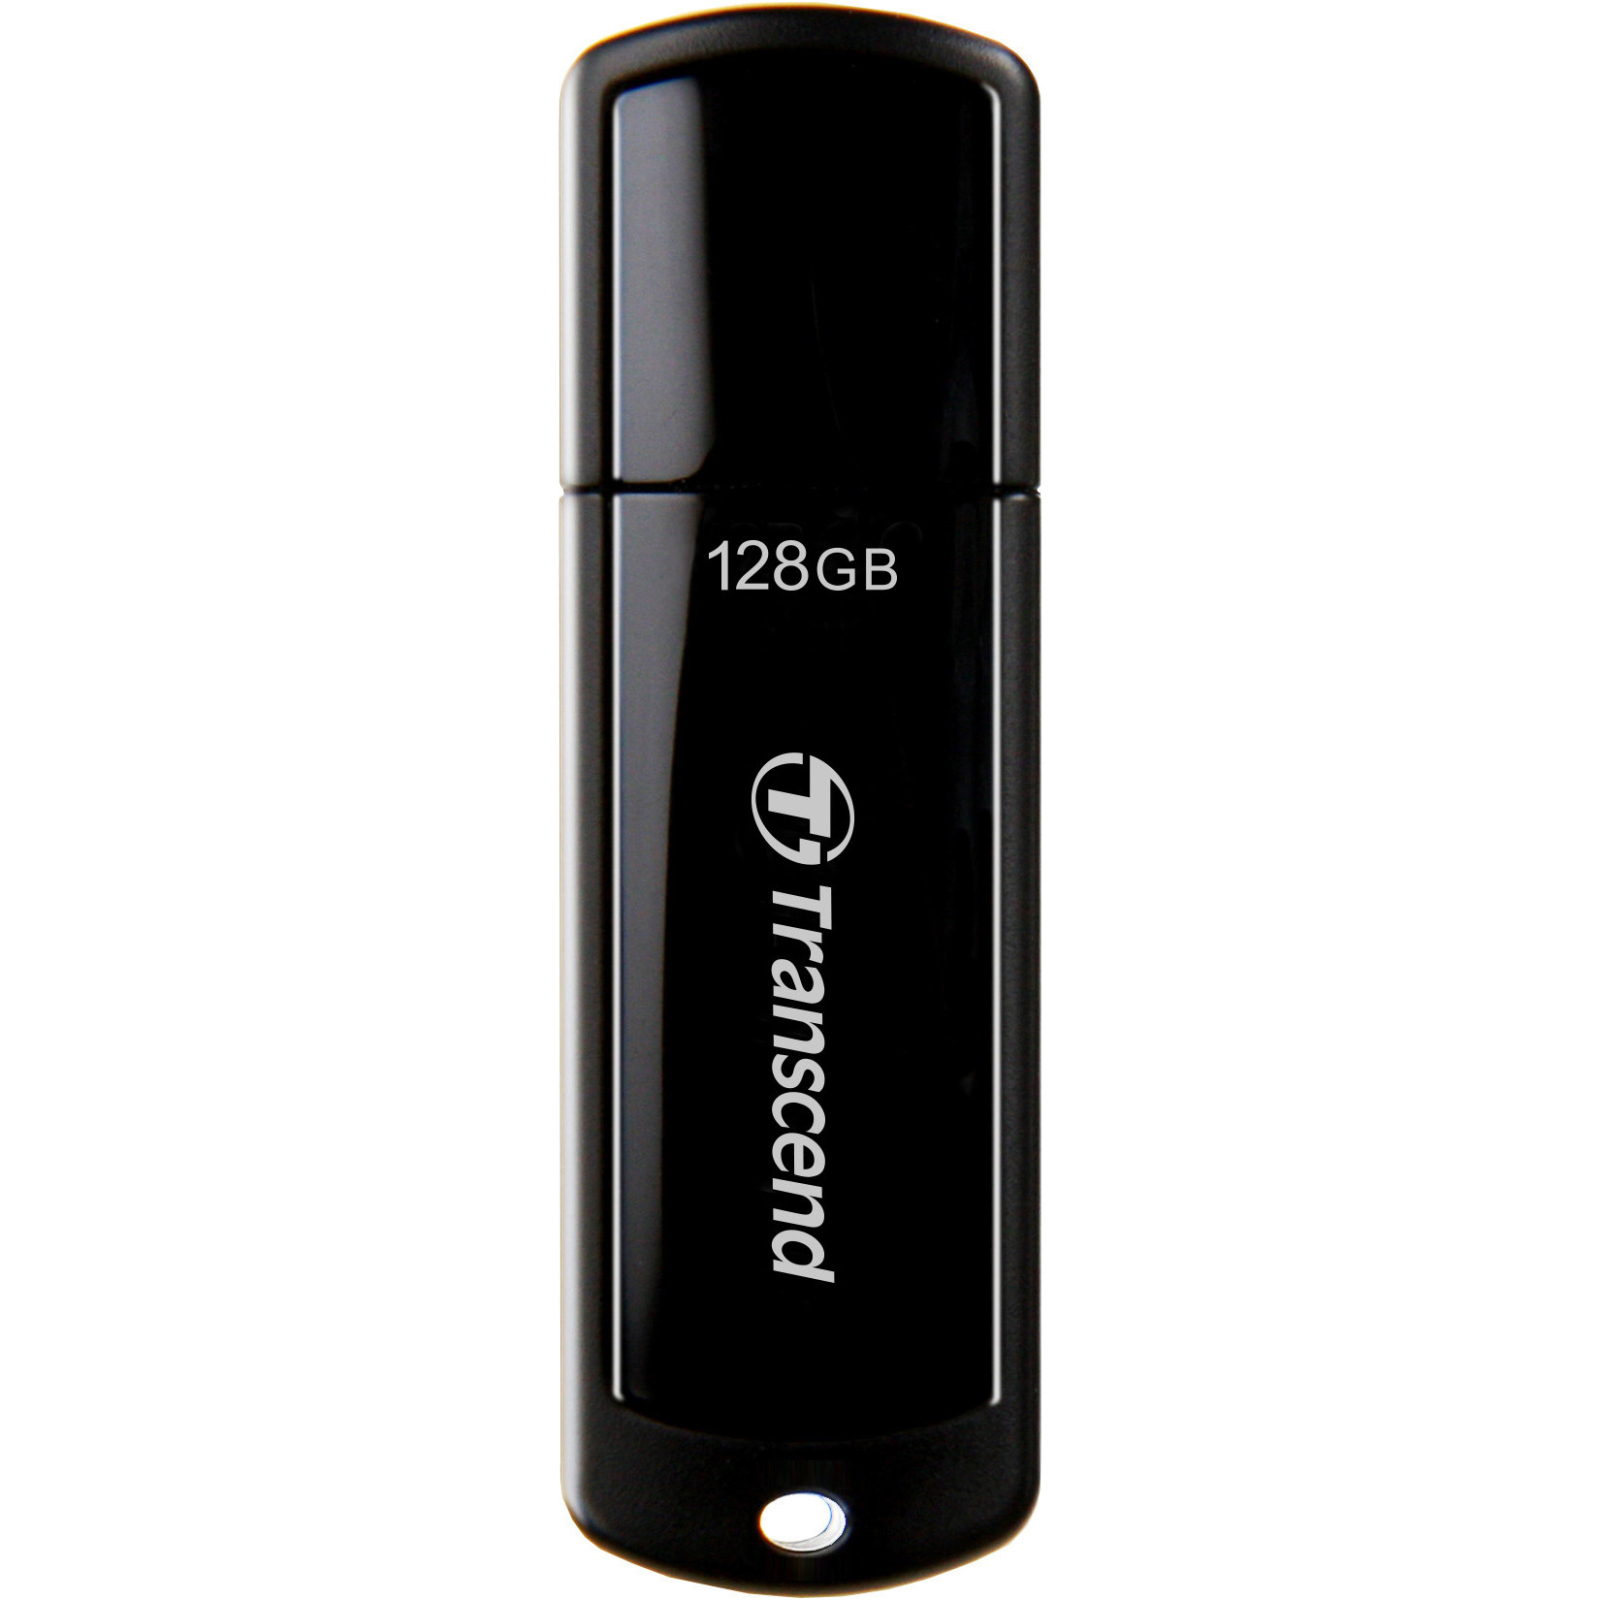 USB флеш накопитель Transcend 8Gb JetFlash 700 (TS8GJF700)